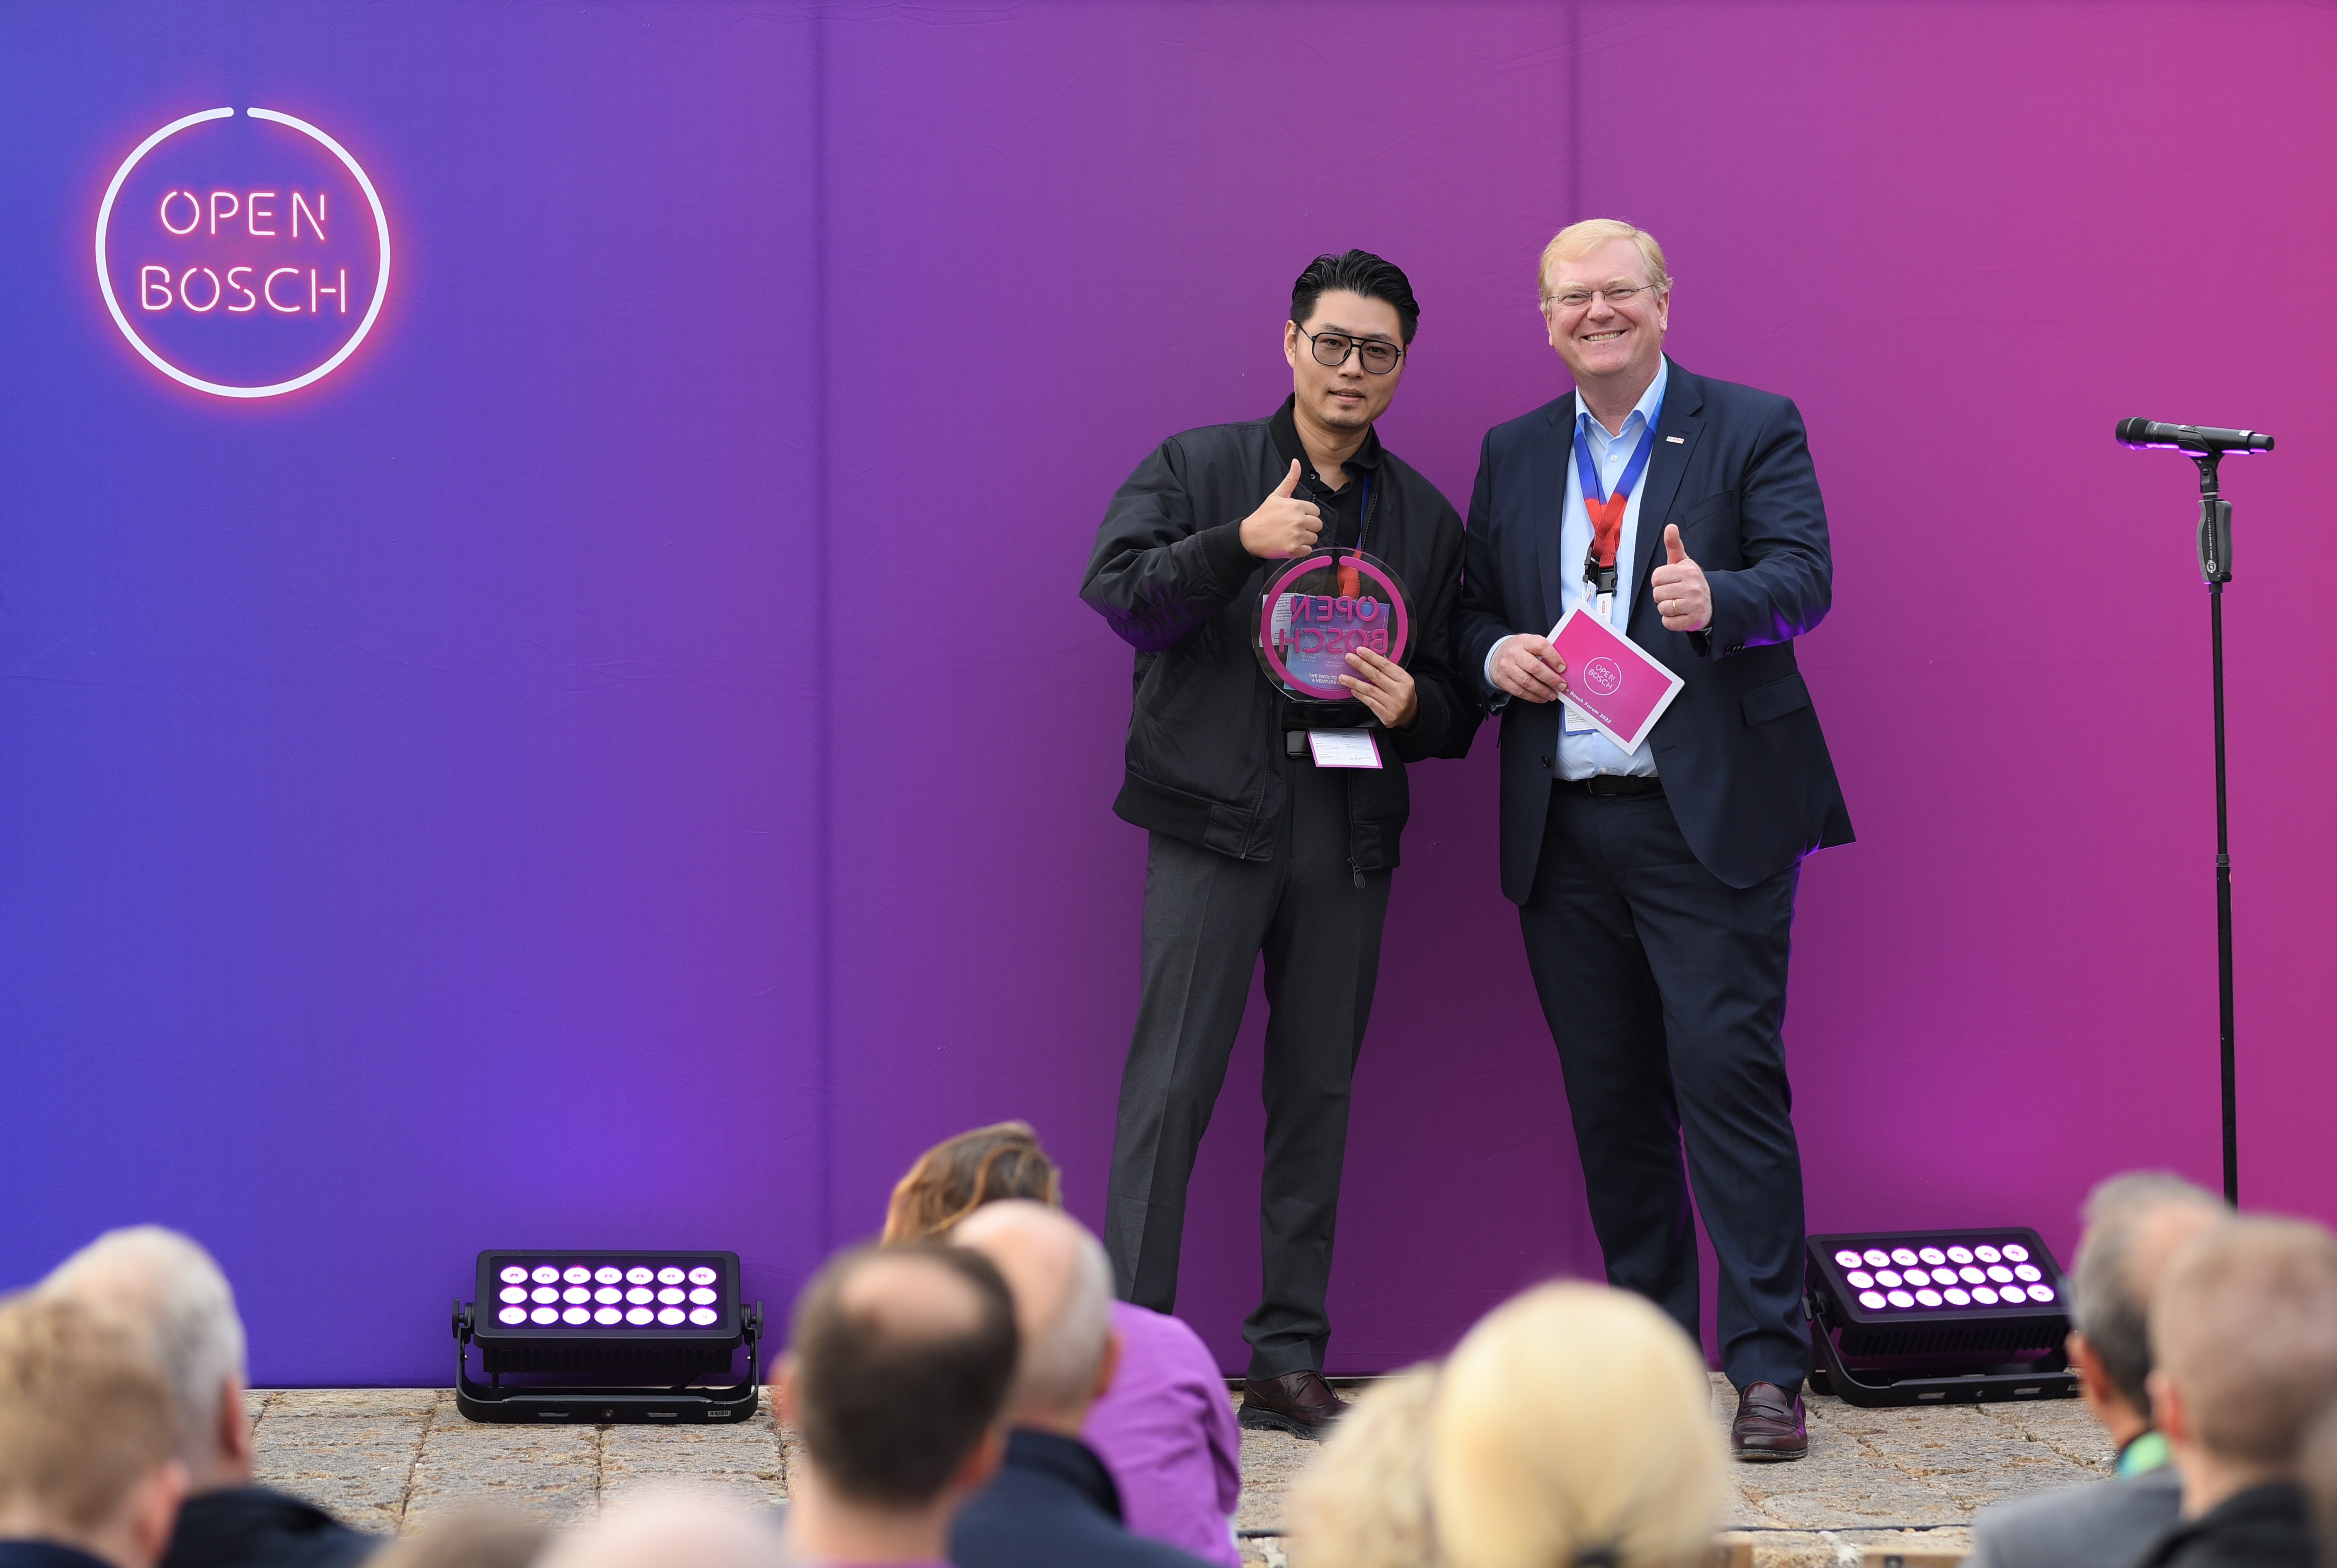 Open Bosch Award 2022 Winner – Ambrose Chow (Business Director Grea Technology); Dr. Stefan Hartung (Vorsitzender der Geschäftsführung der Robert Bosch GmbH)